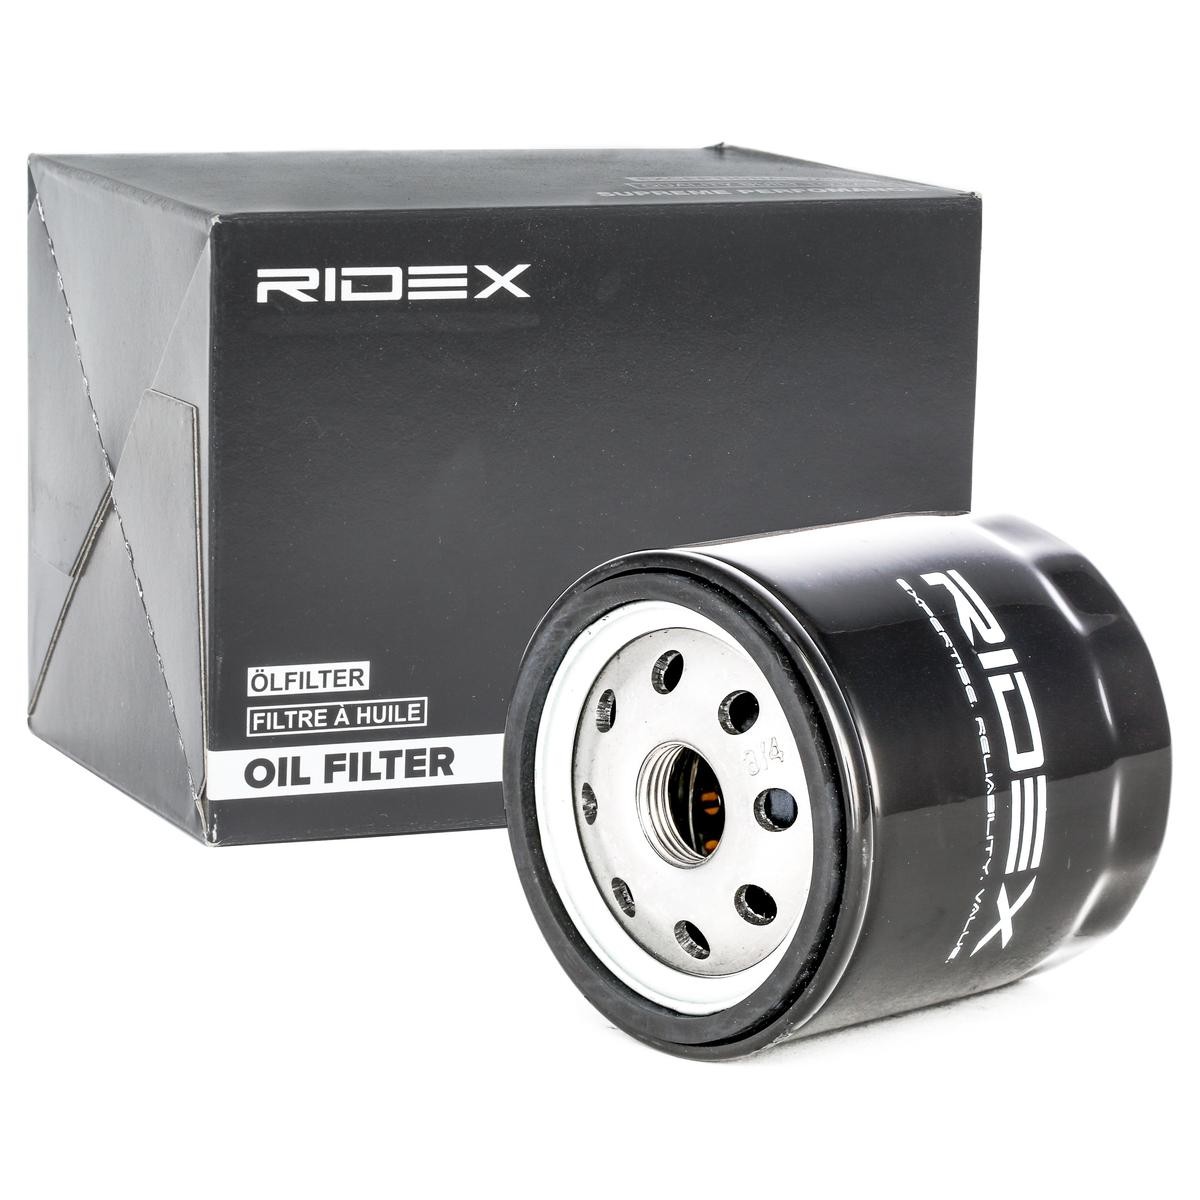 Filtro olio RIDEX 7O0136 conoscenze specialistiche